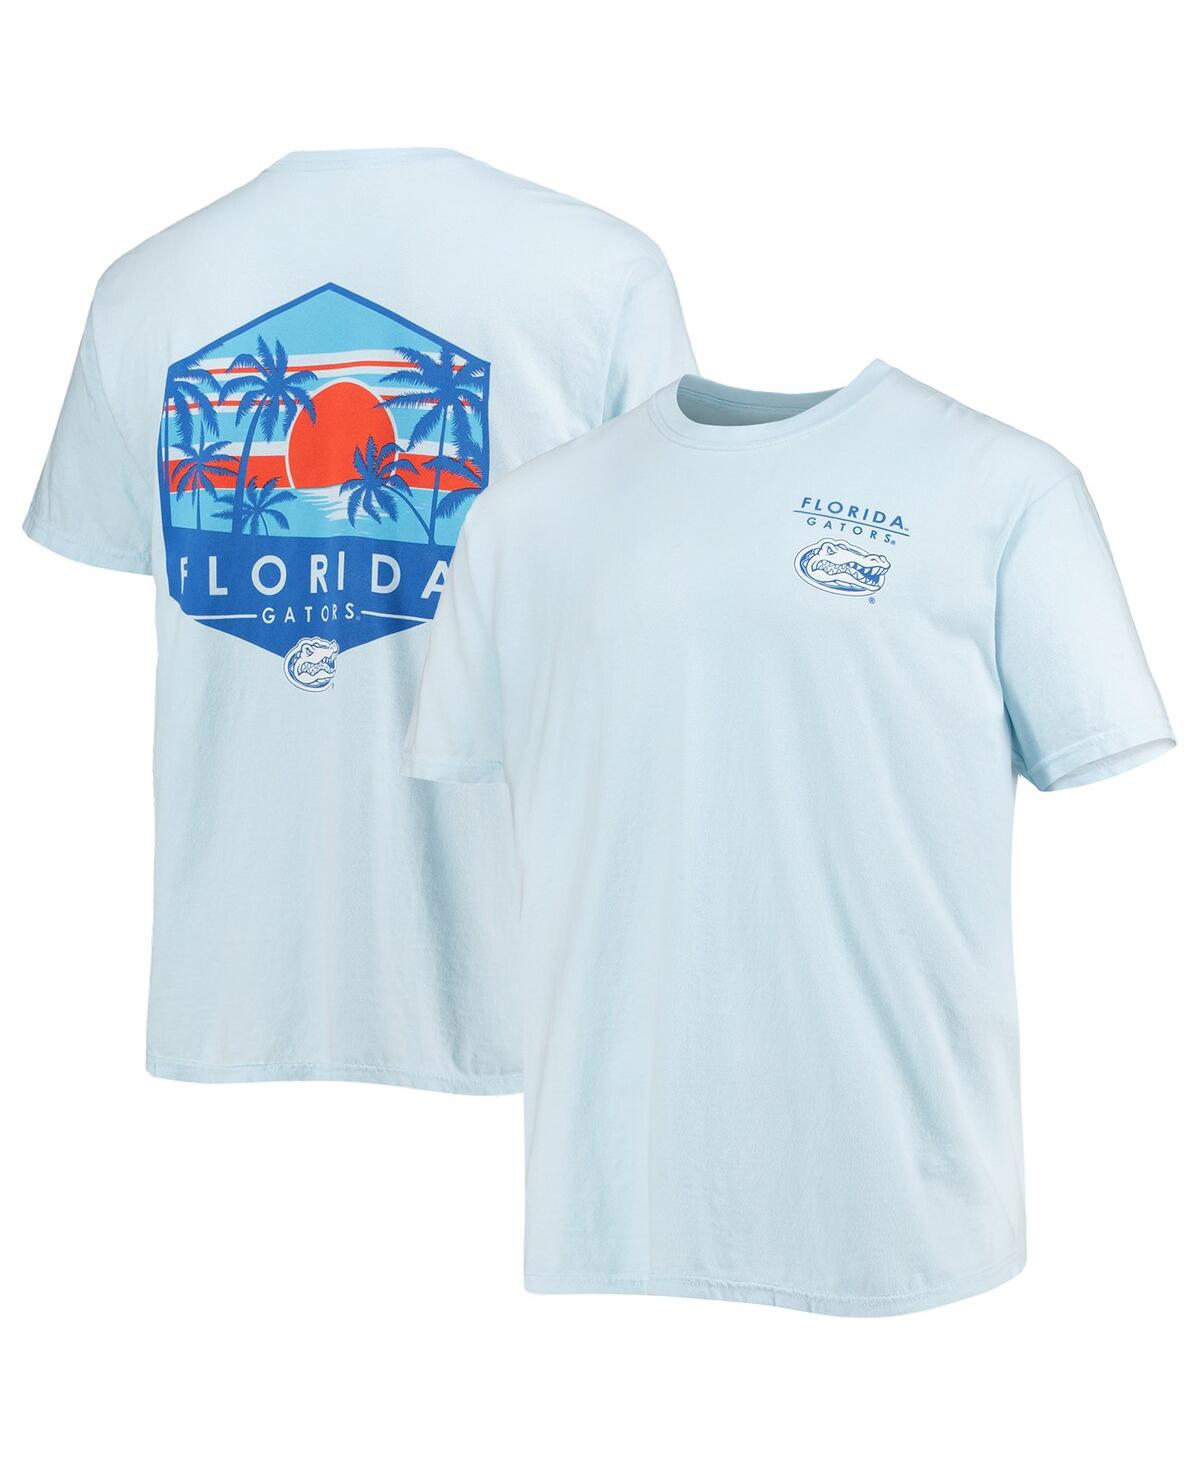 Men's Light Blue Florida Gators Landscape Shield Comfort Colors T-shirt - Light Blue